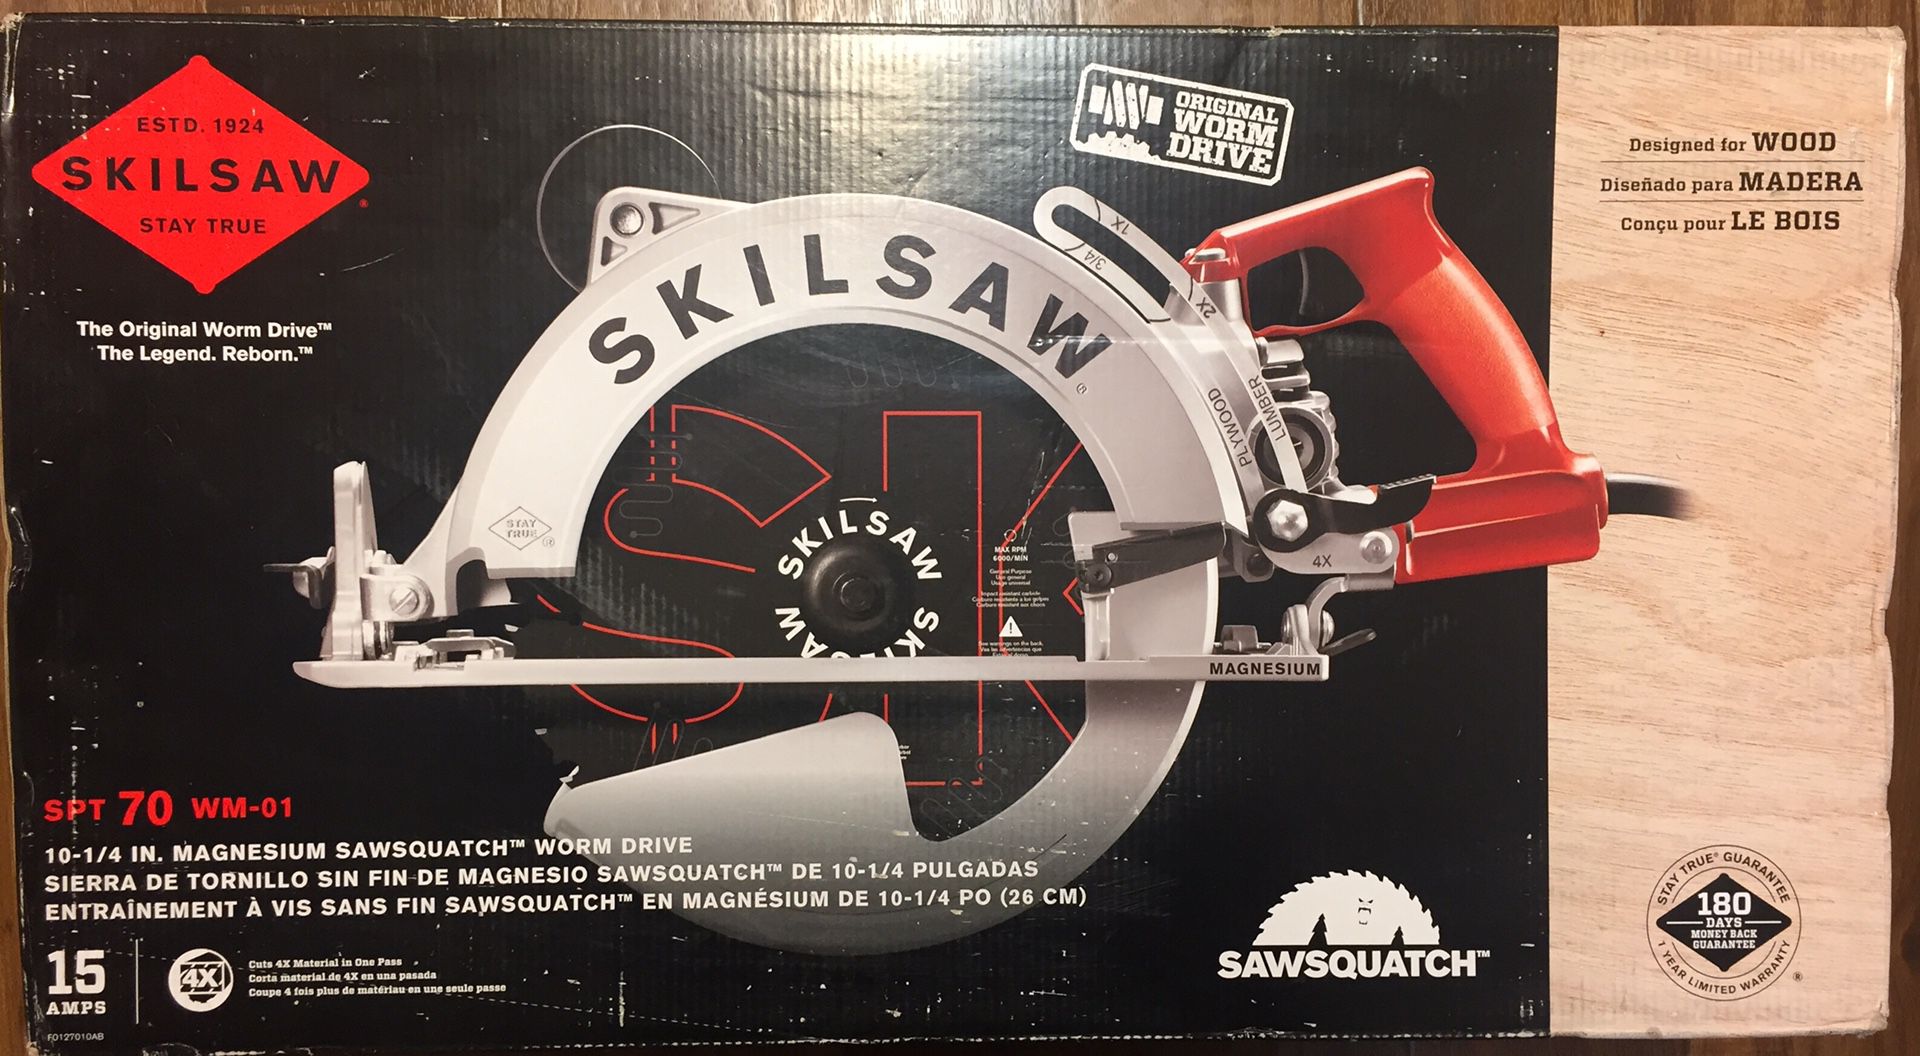 Skillsaw sawsquatch big foot